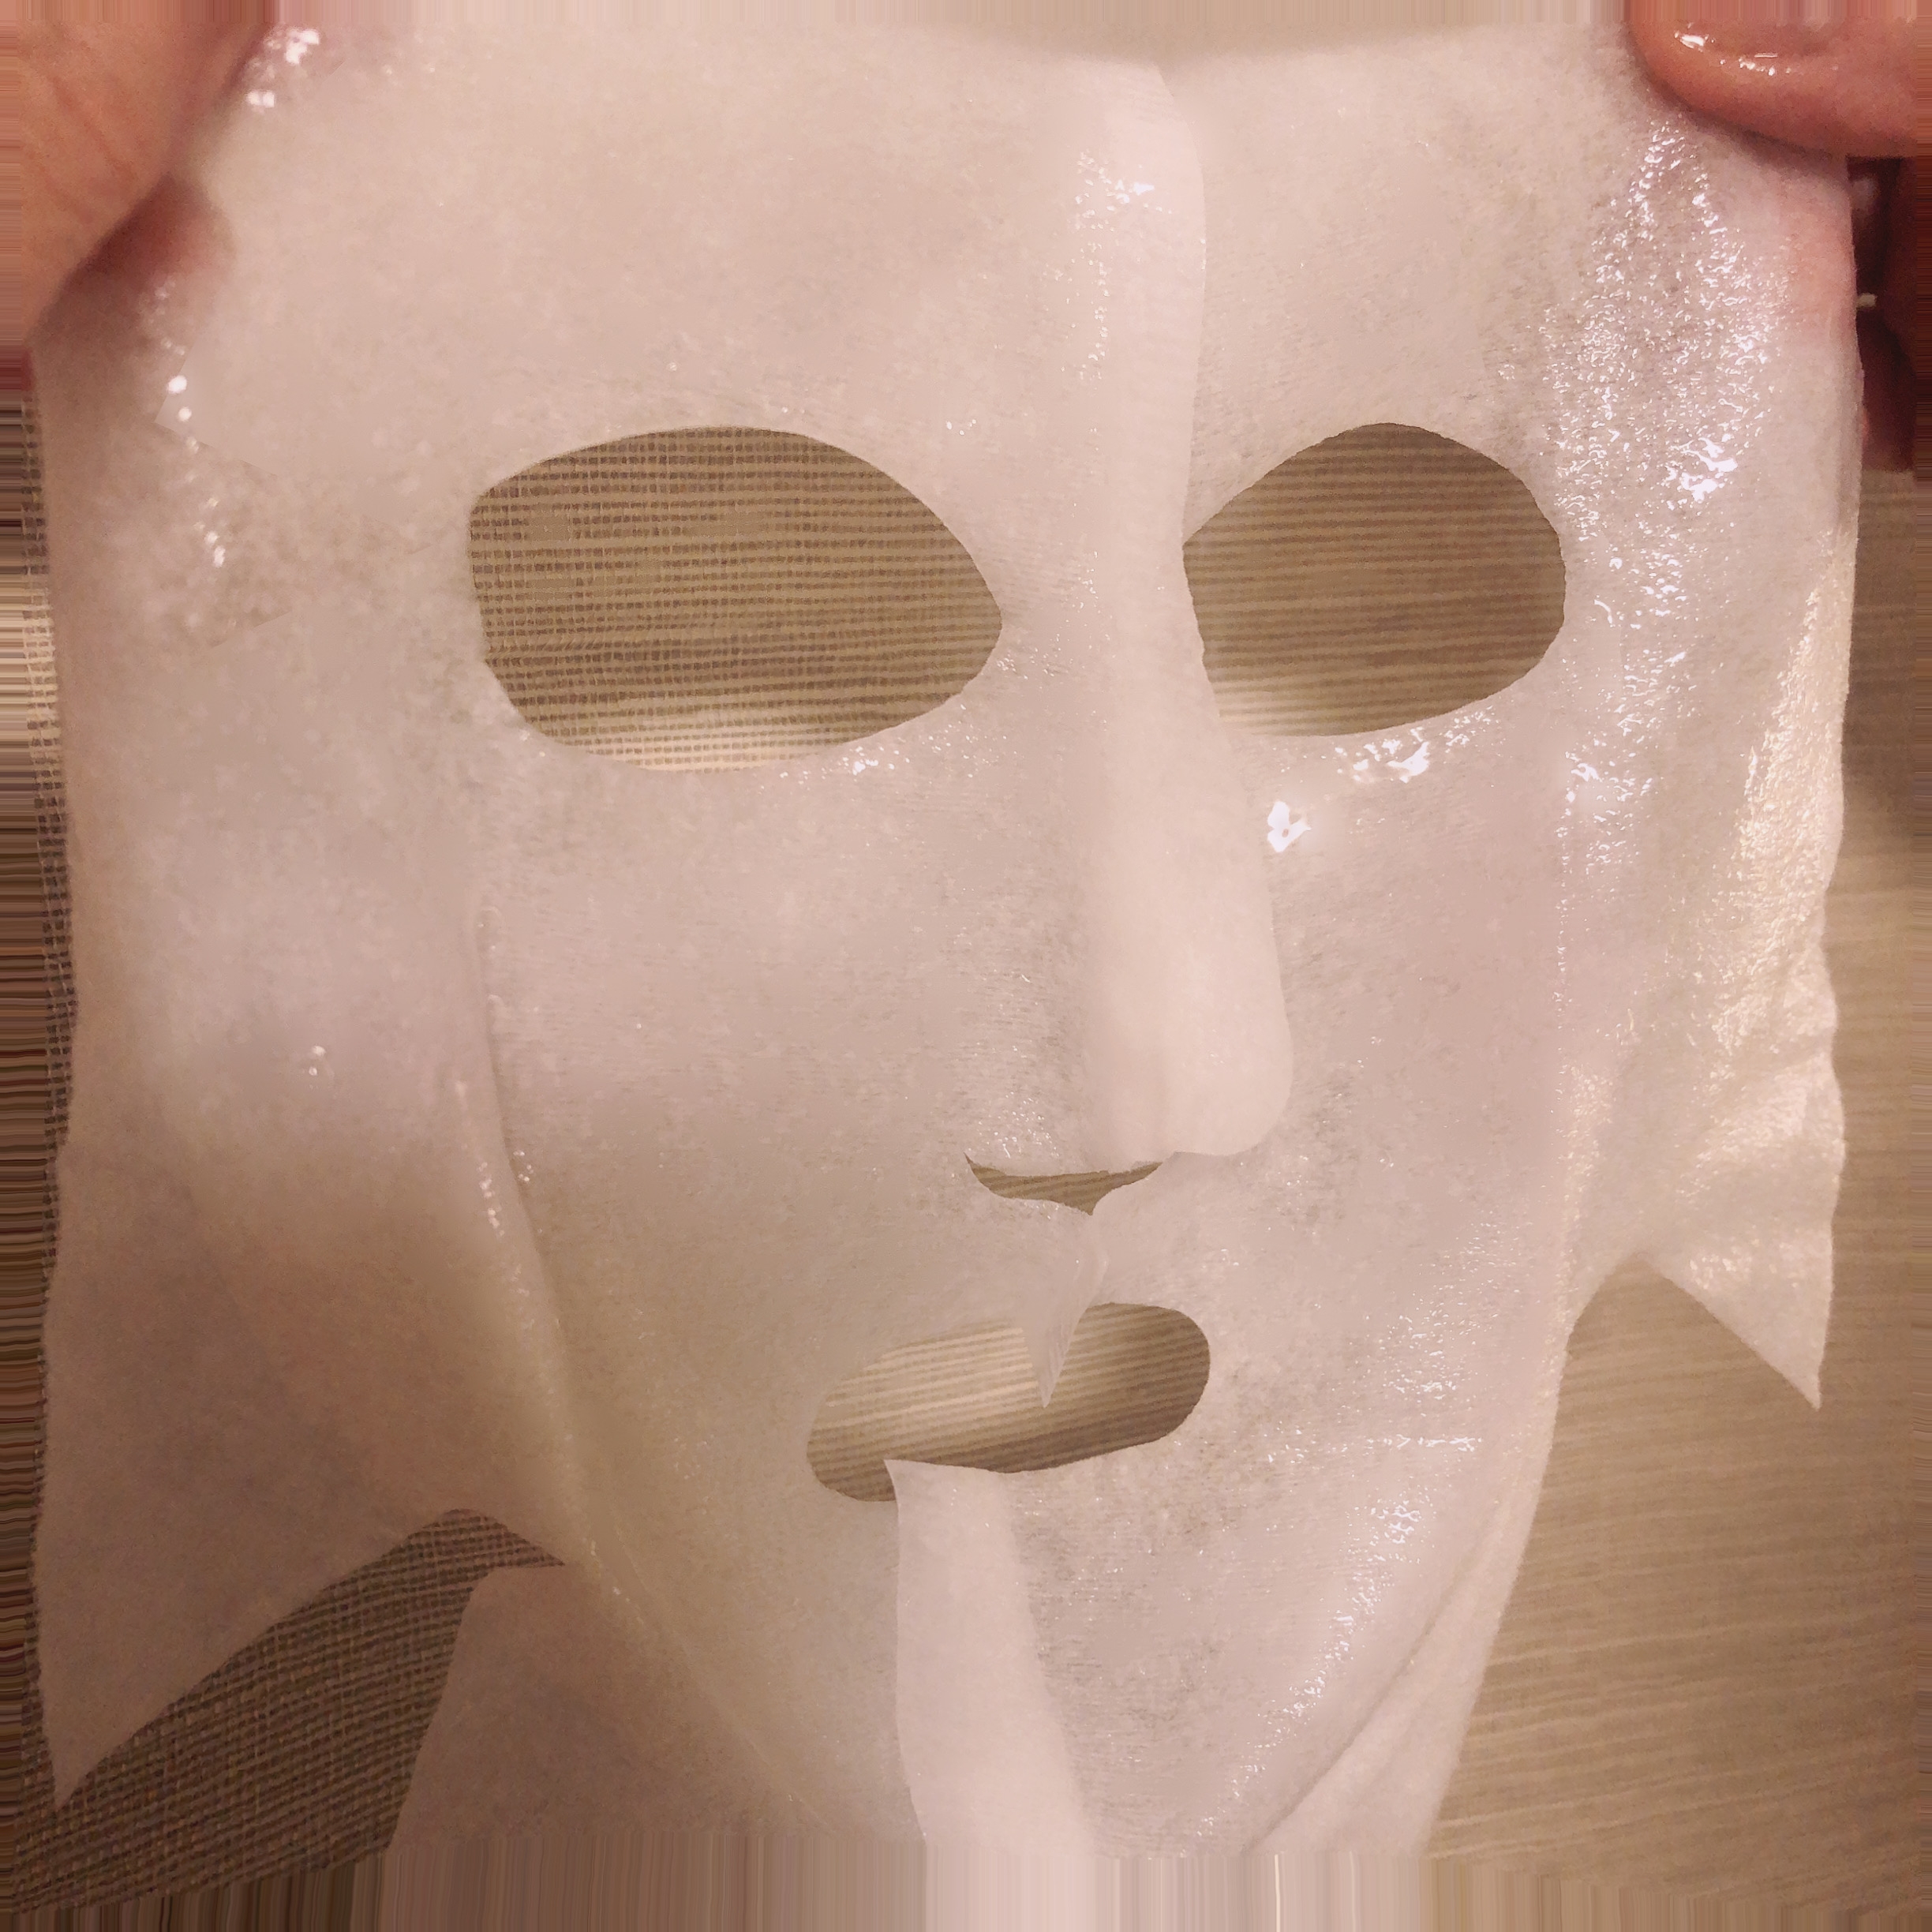 超浸透3Dマスク エイジングケア (保湿)を使ったyungさんのクチコミ画像2